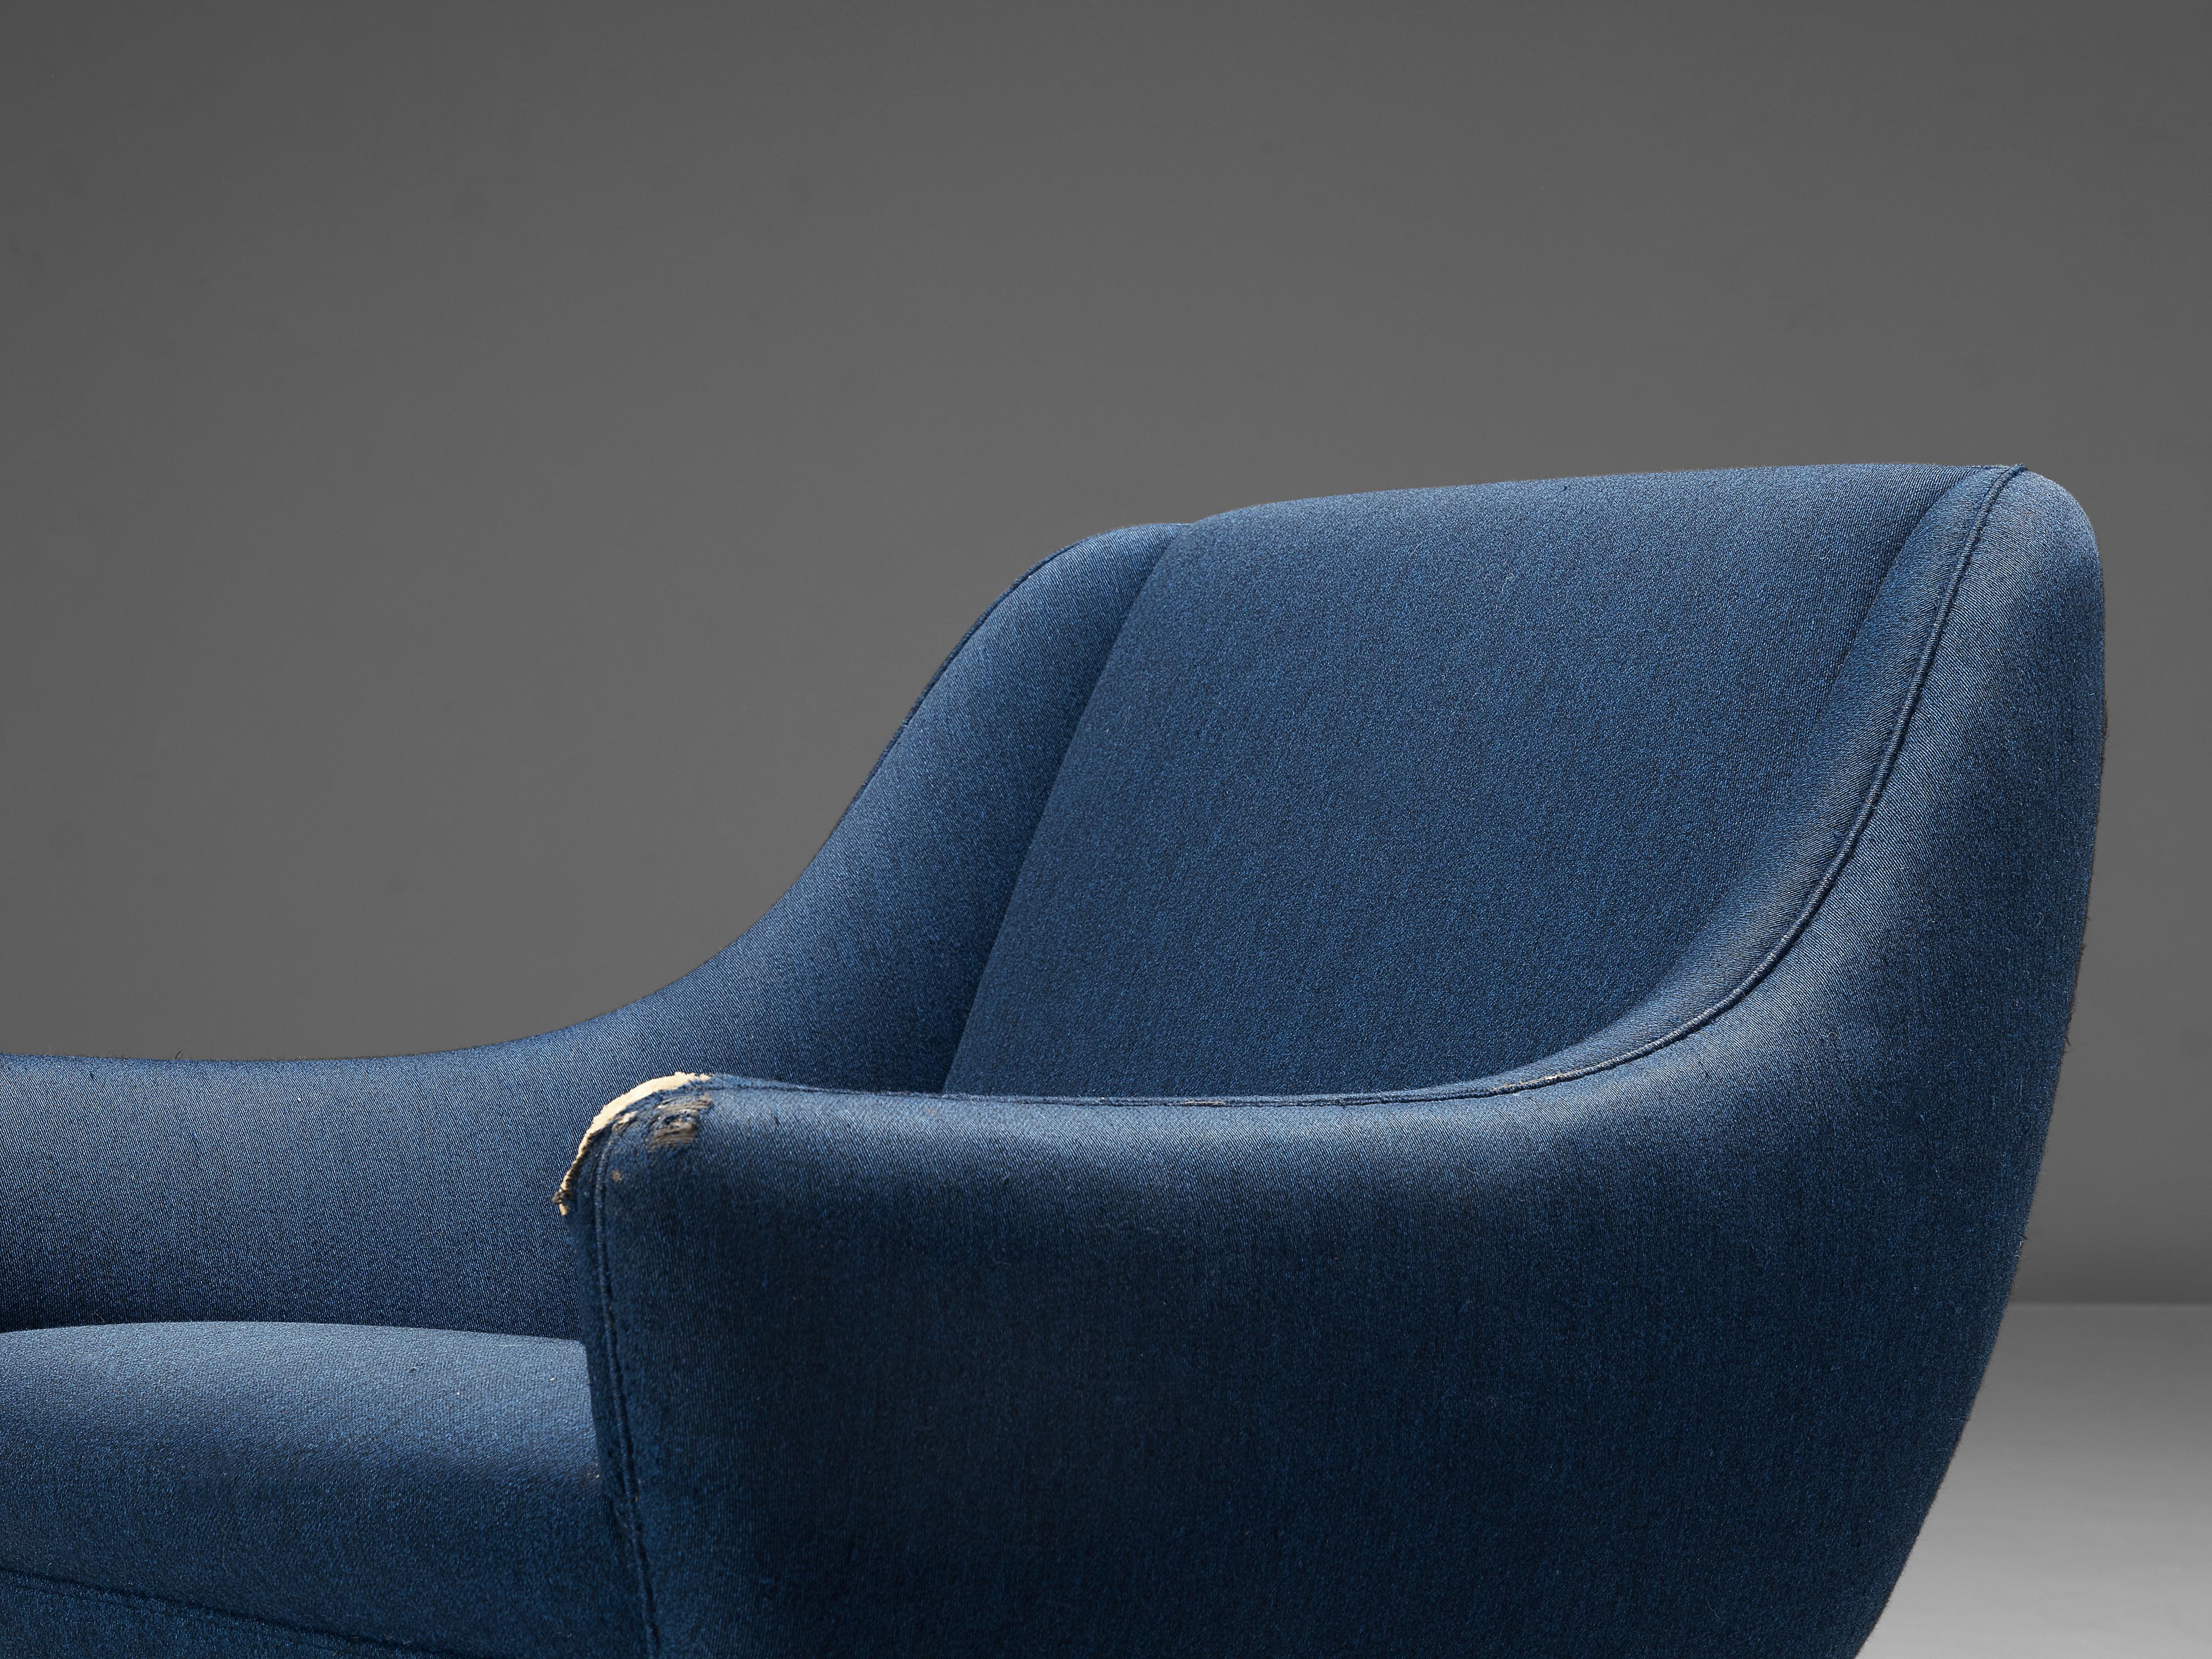 European Illum Wikkelsø Lounge Chair in Blue Upholstery For Sale